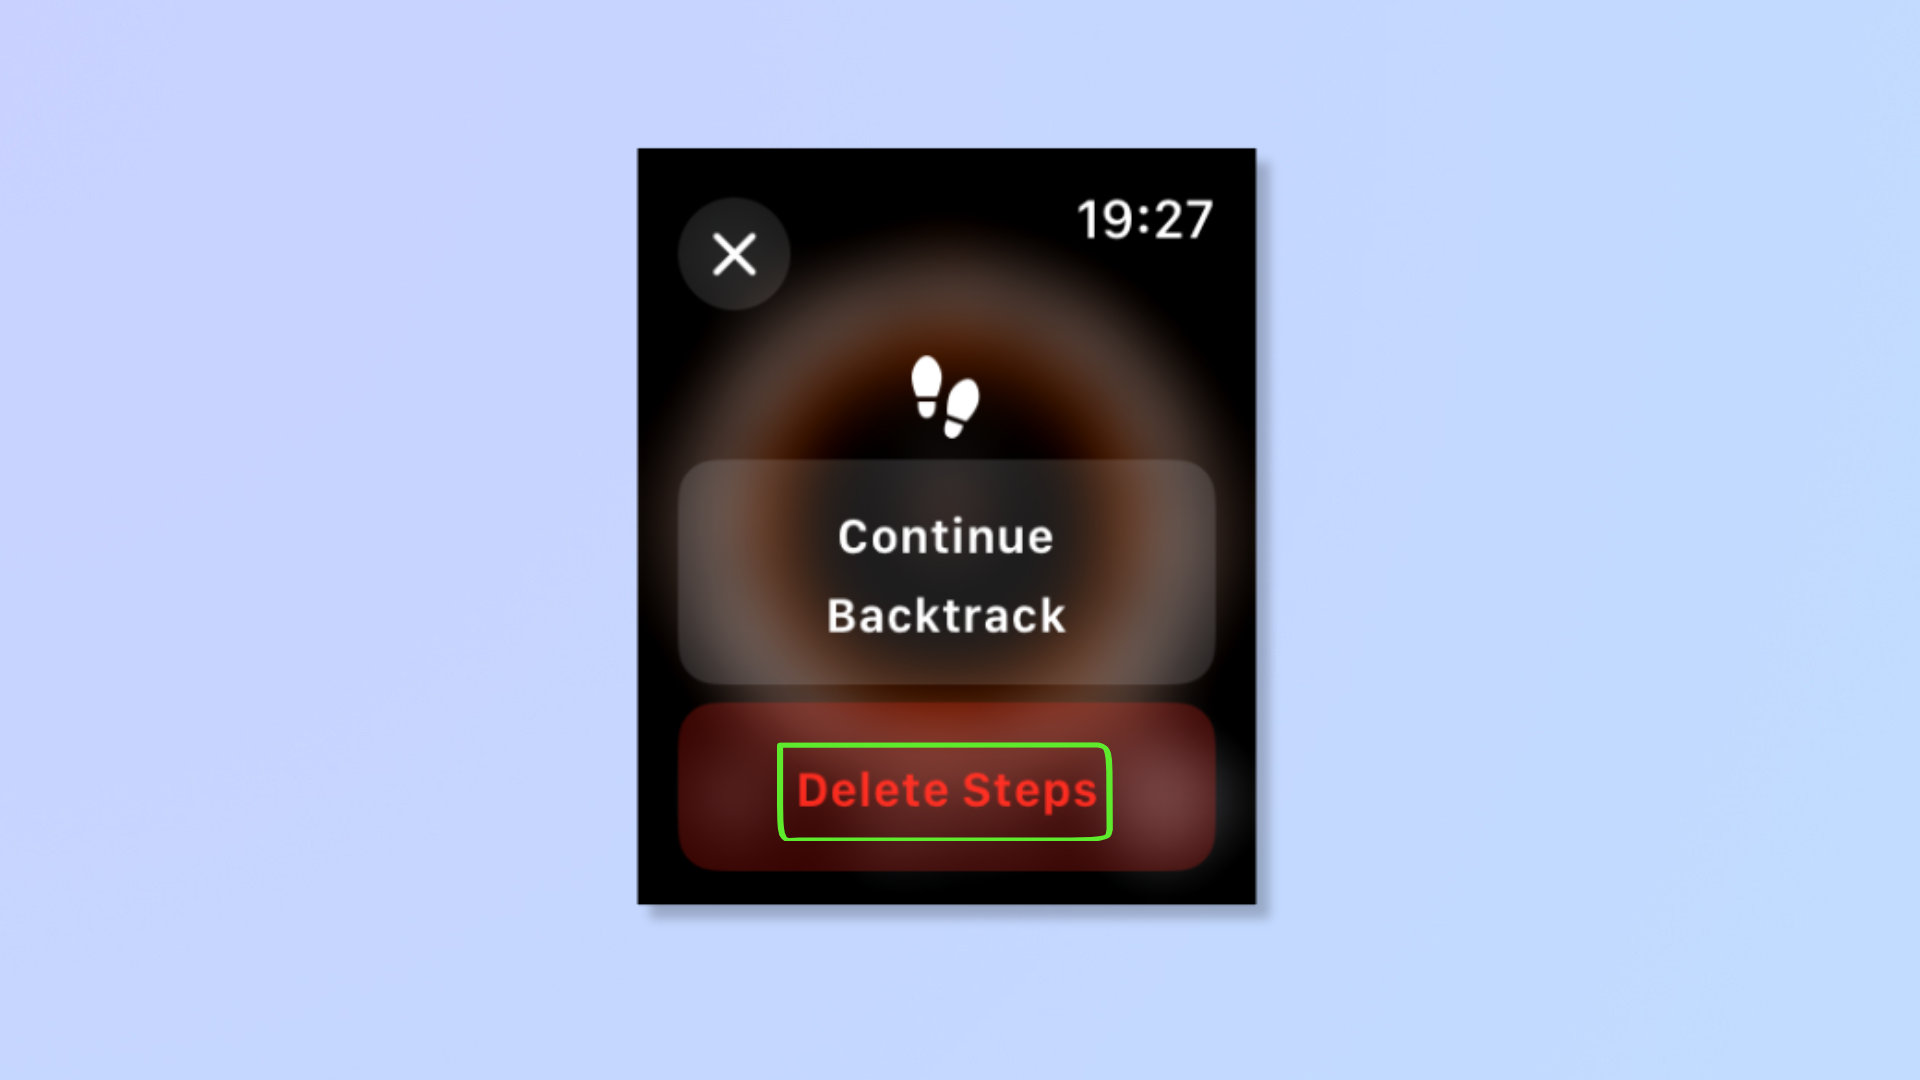 Снимок экрана инструмента «Возврат» на Apple Watch, на котором выделена опция «Удалить шаги». 